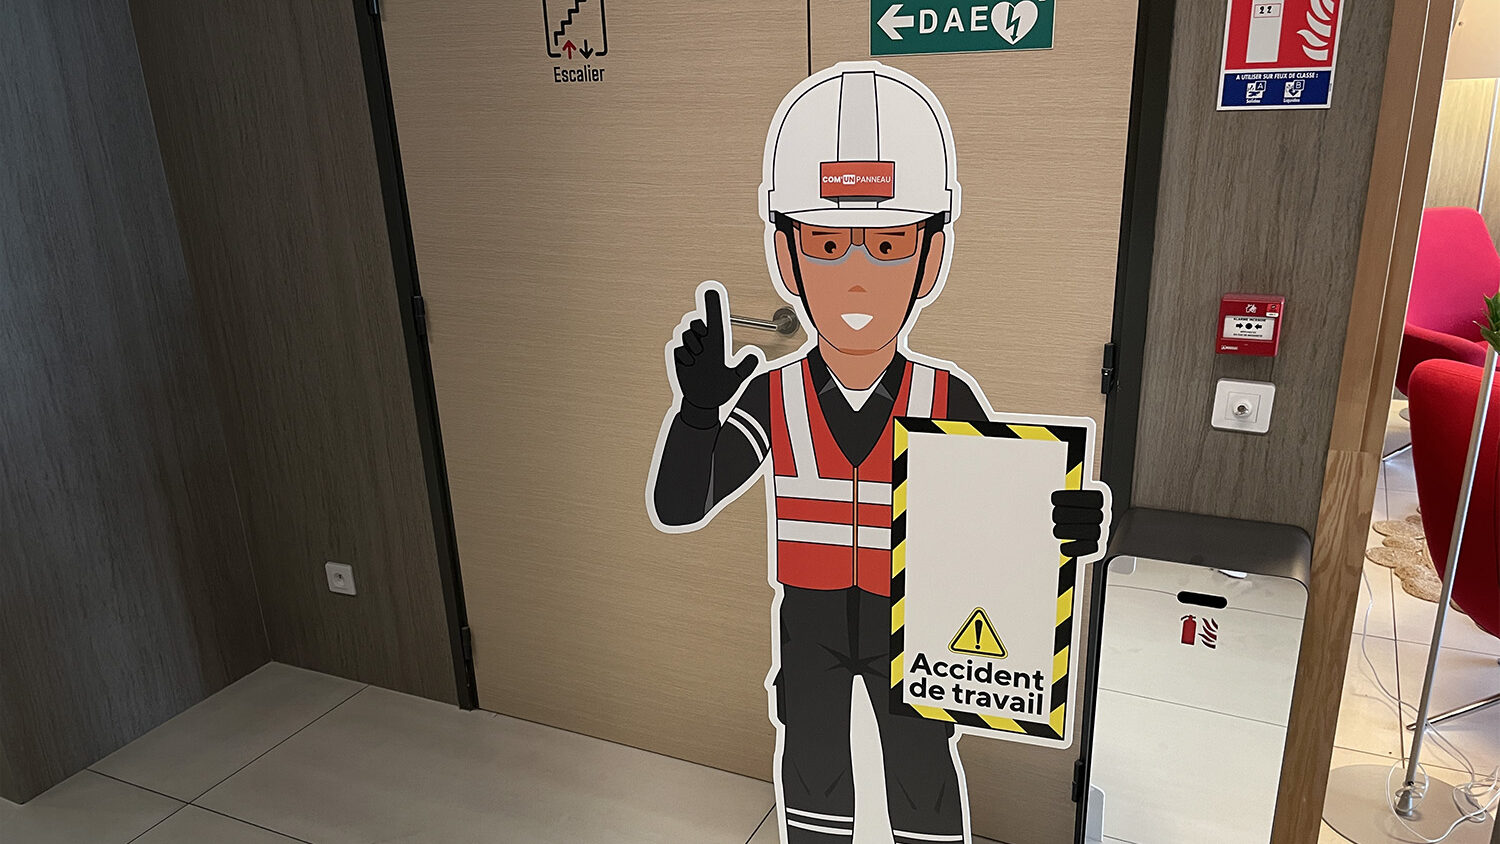 Totem sécurité Accident de travail - PVC avec chevalet - Com'un Panneau - Création plan d'affichage